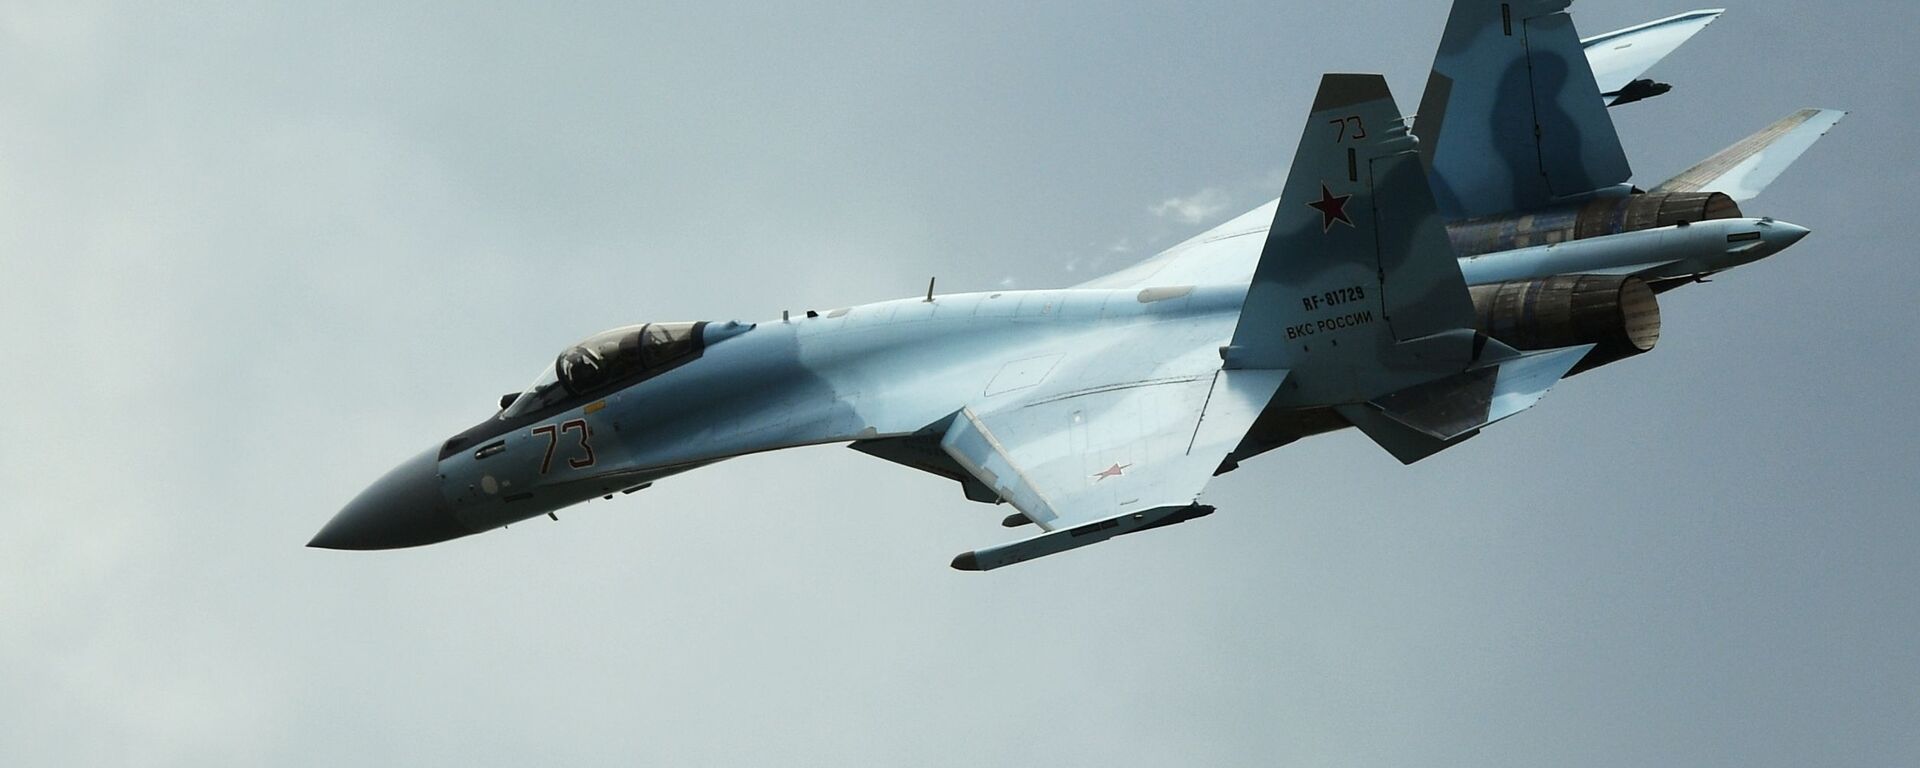 Máy bay Su-35S tại diễn đàn kỹ thuật quân sự quốc tế Army-2019. - Sputnik Việt Nam, 1920, 26.09.2021